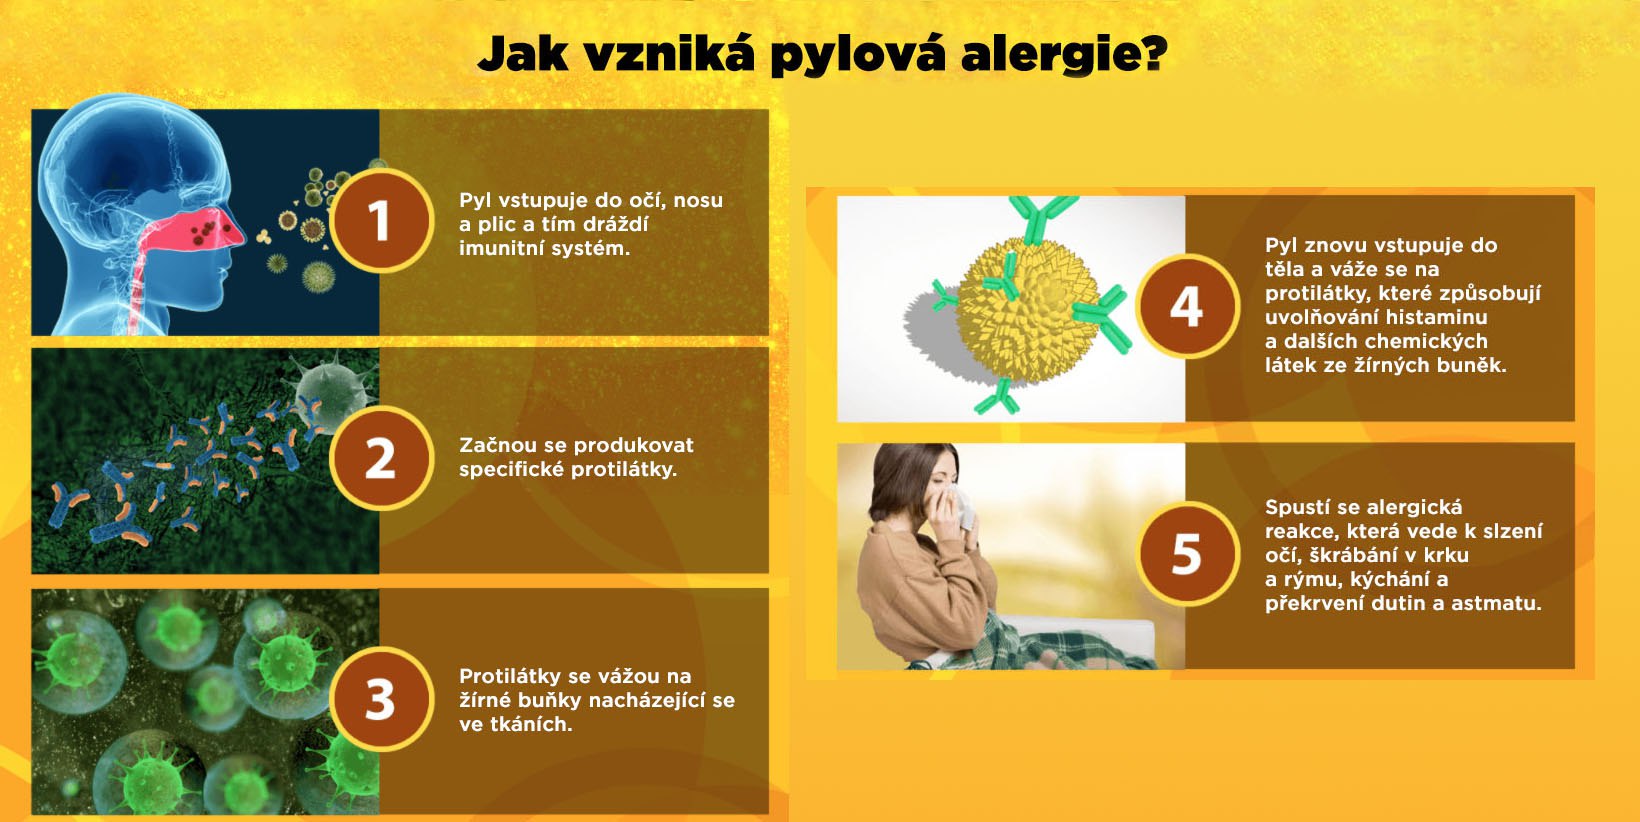 Kdy začíná alergie na pyl?